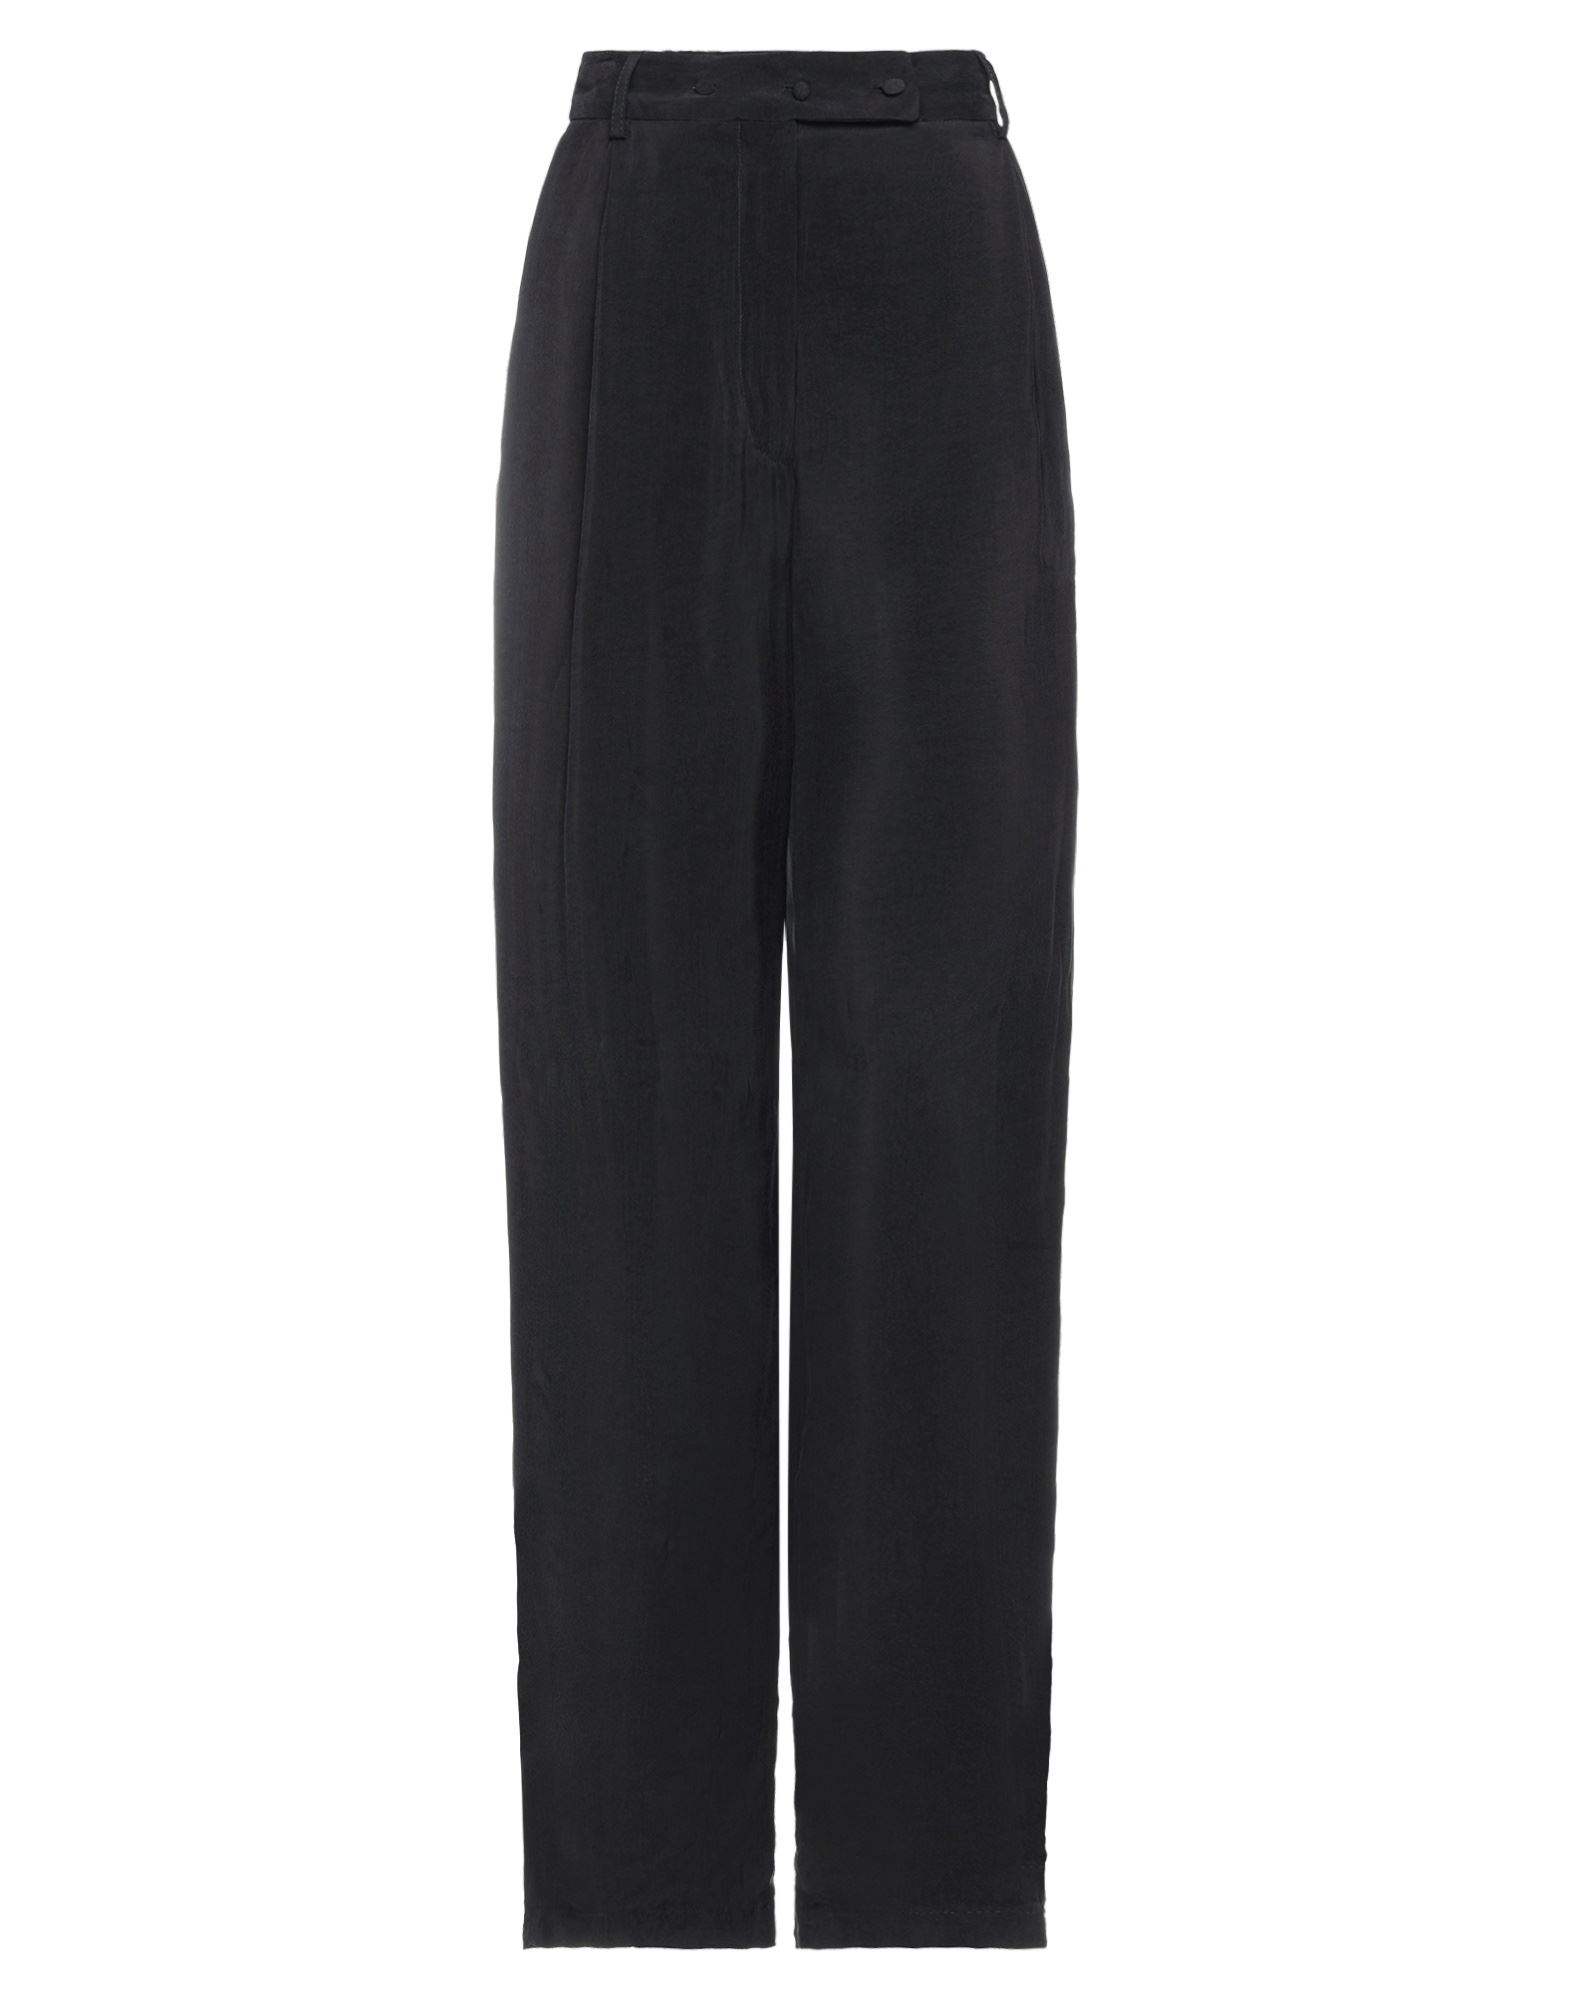 Shop Maison Fl Neur Maison Flâneur Woman Pants Black Size 4 Cupro